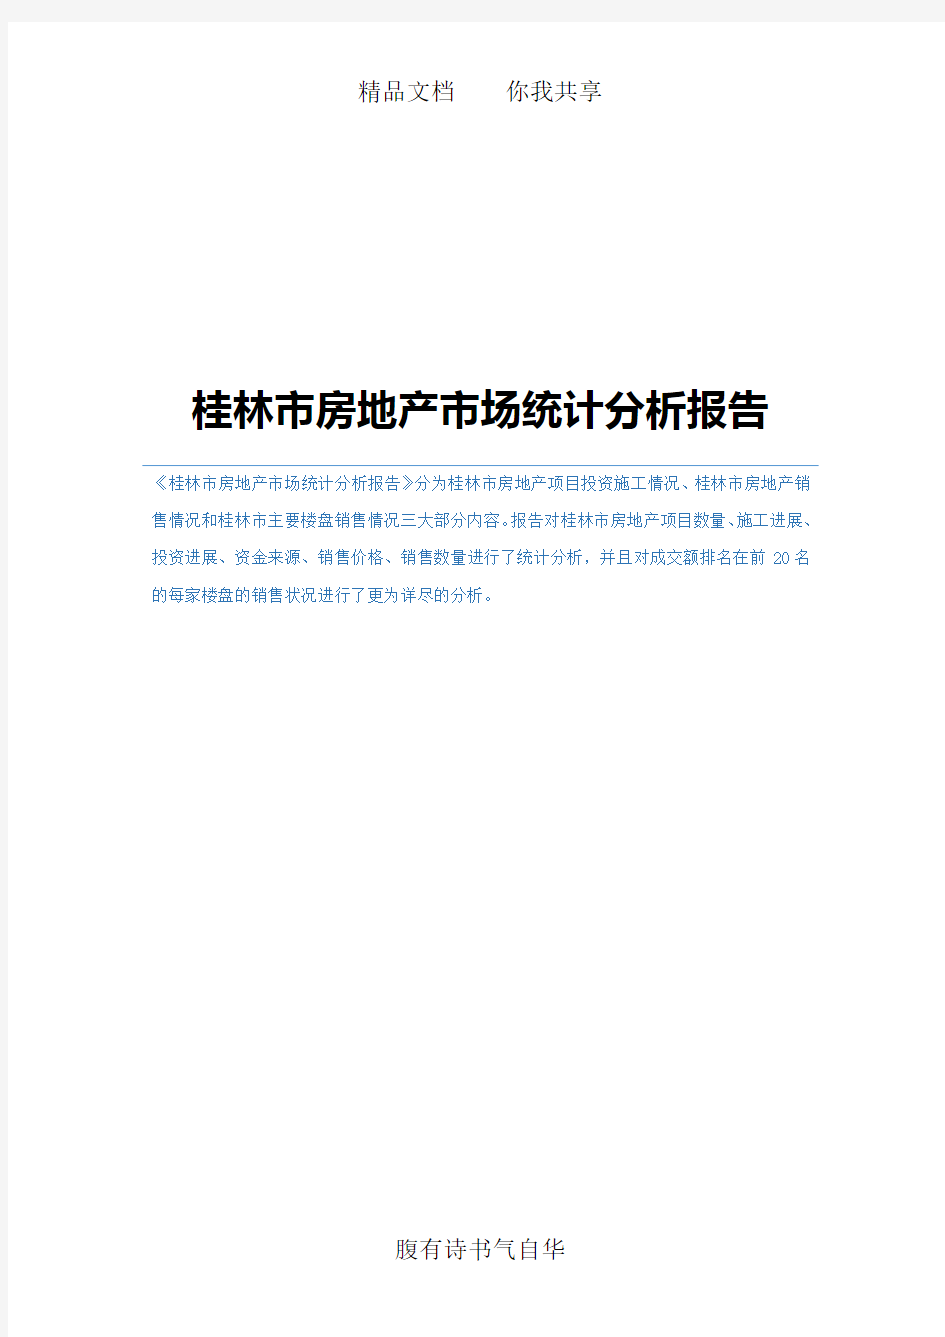 桂林市房地产市场统计分析报告